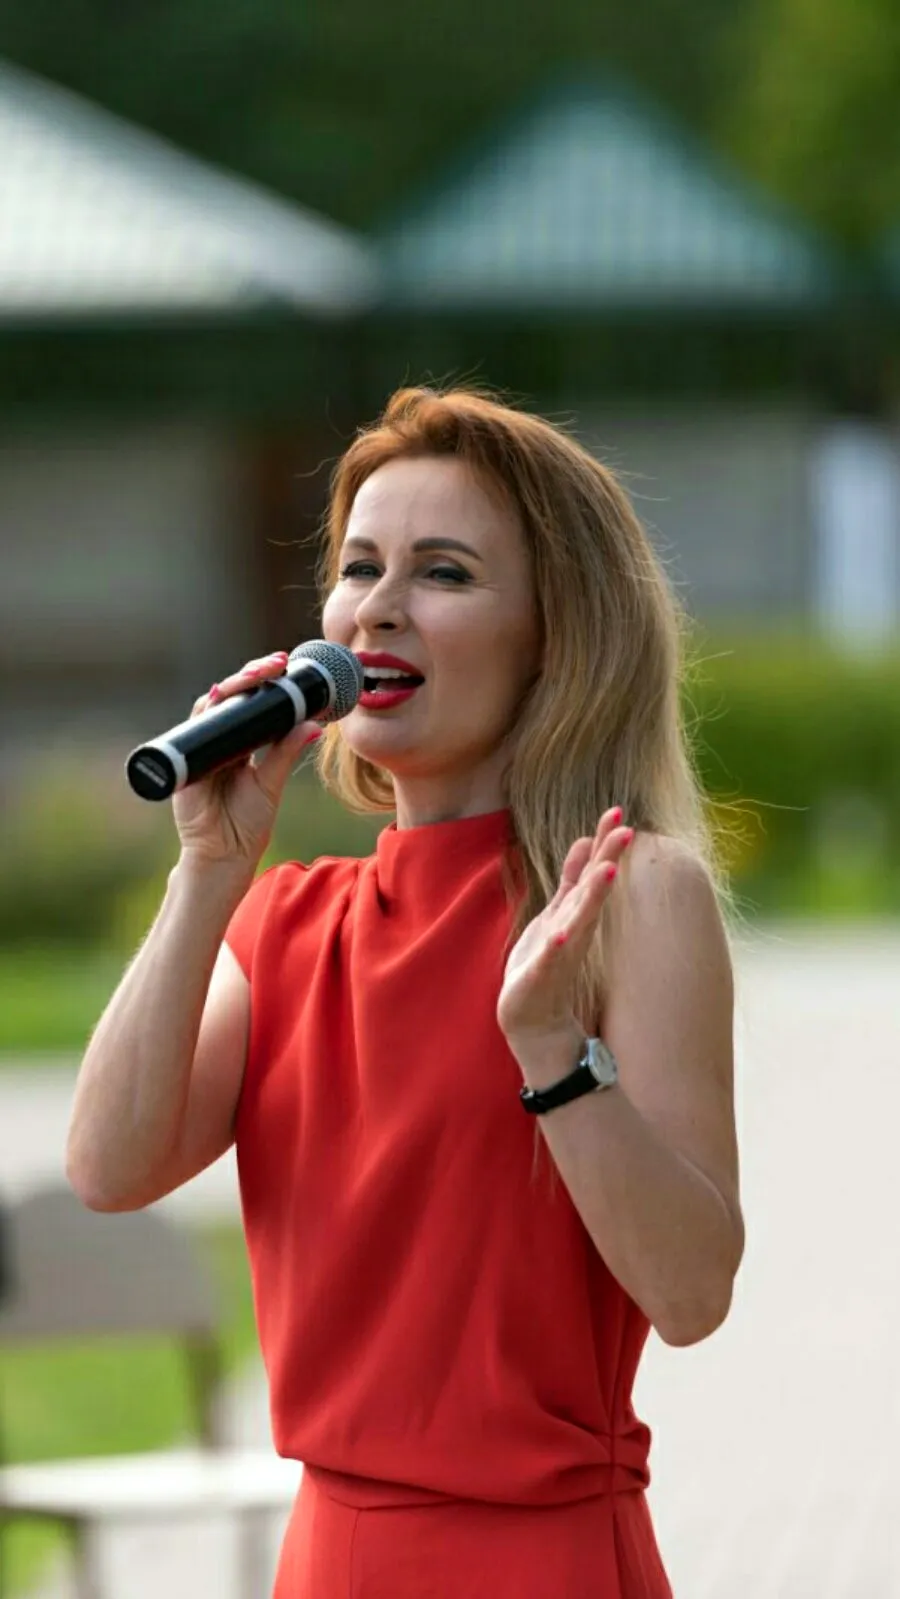 Юлия Быкова